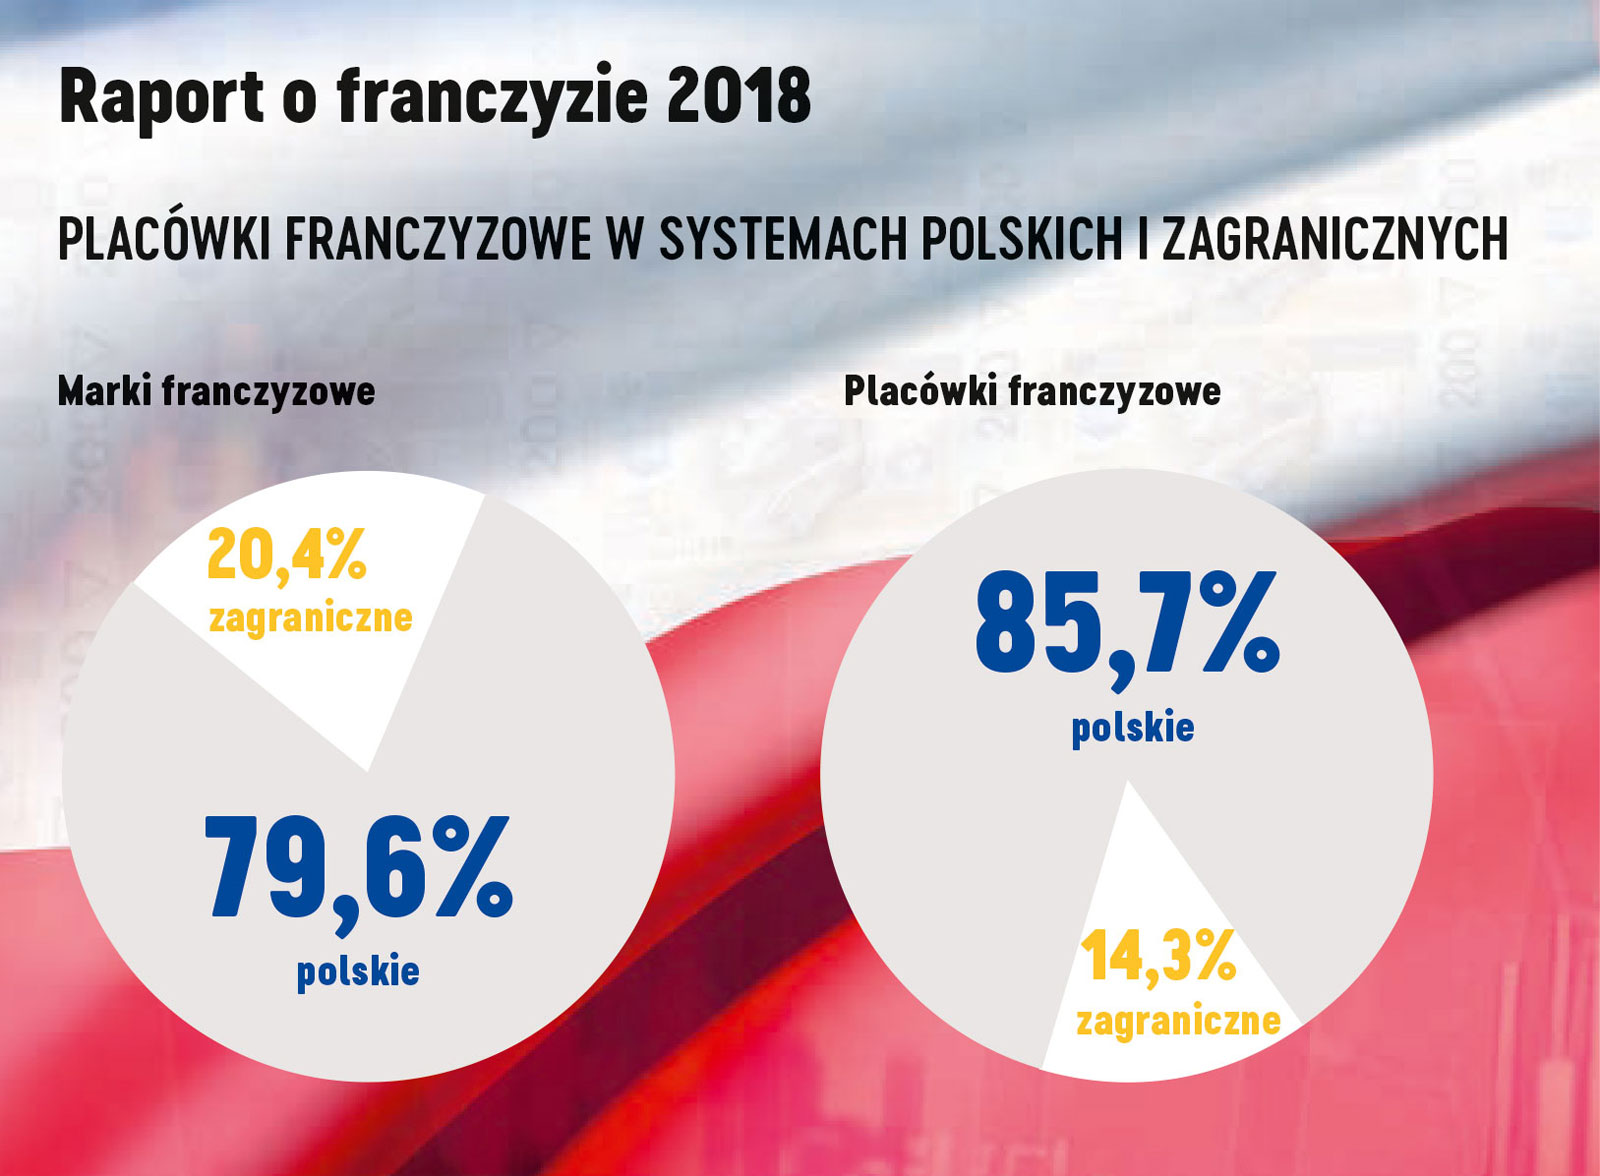 Franczyza w Polsce w 2018 r. dane statystyczne